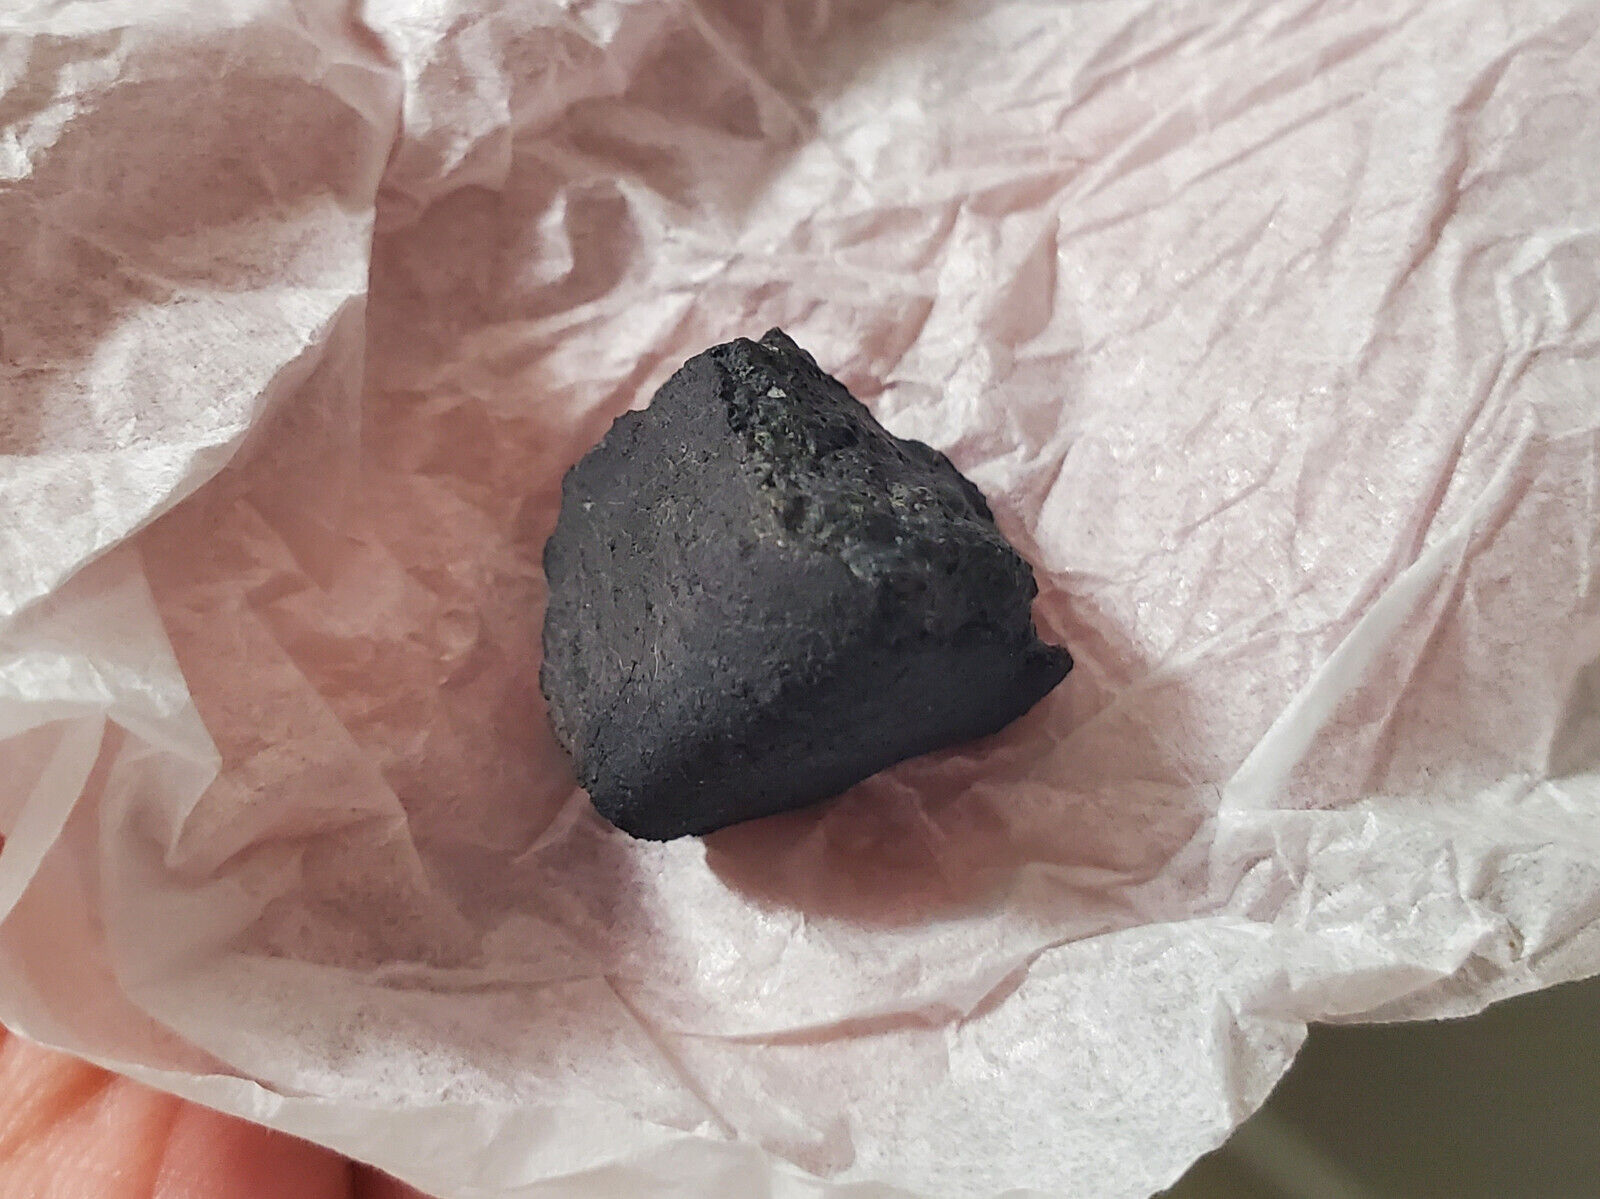 Jbilet Winselwan CM2 Carboneceous Chondrite Meteorite 3.658g